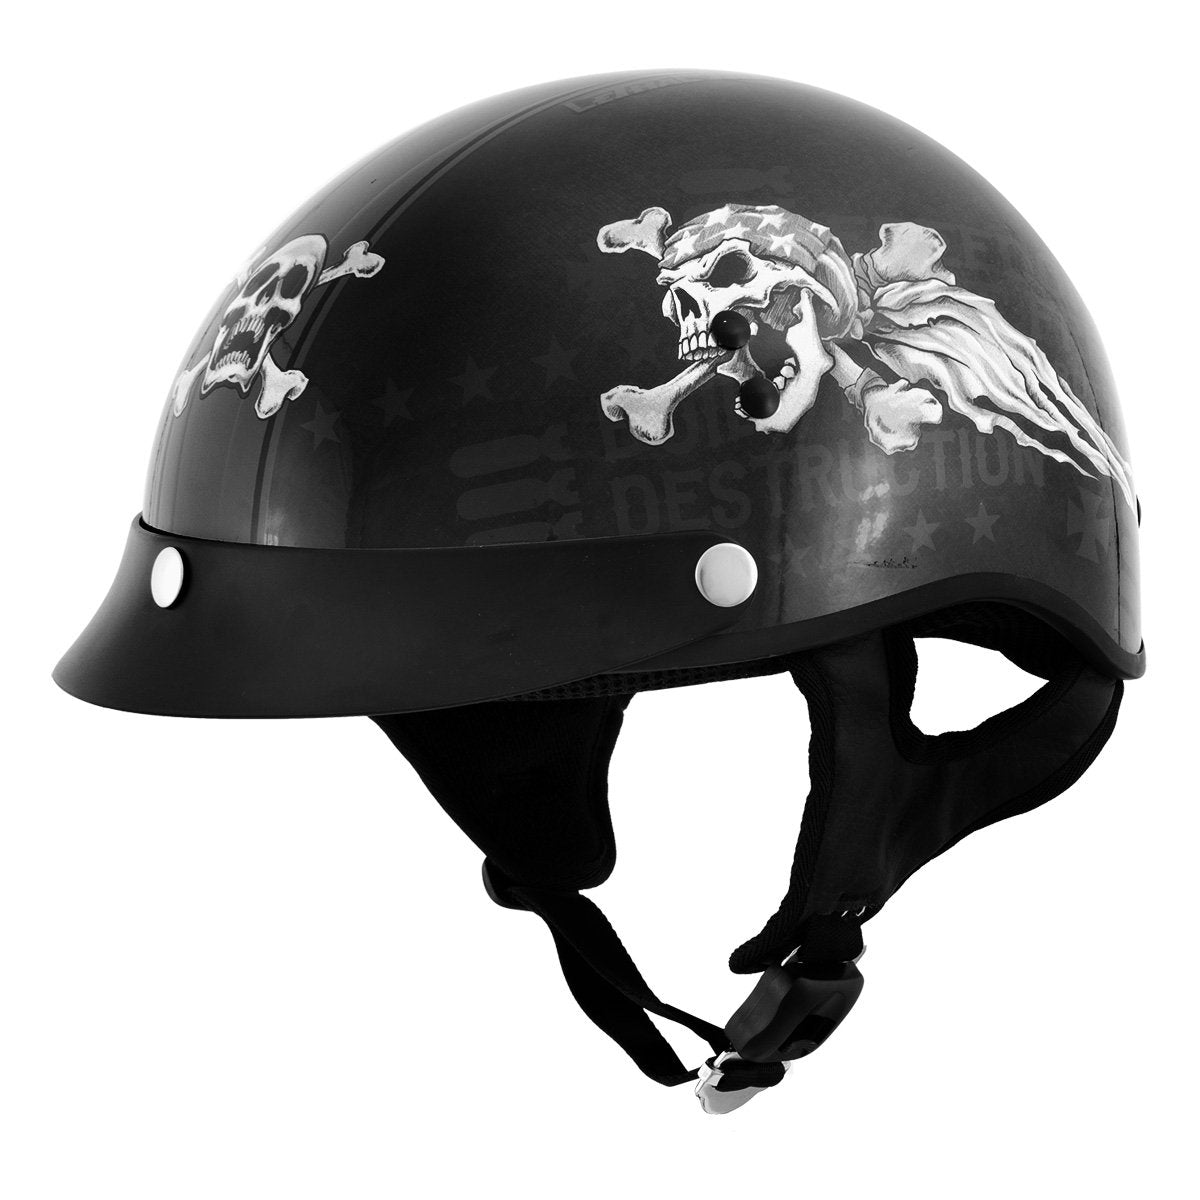 Outlaw Helmets T70 Black Freedom Skull Motorcycle Half Helmet for Men ...